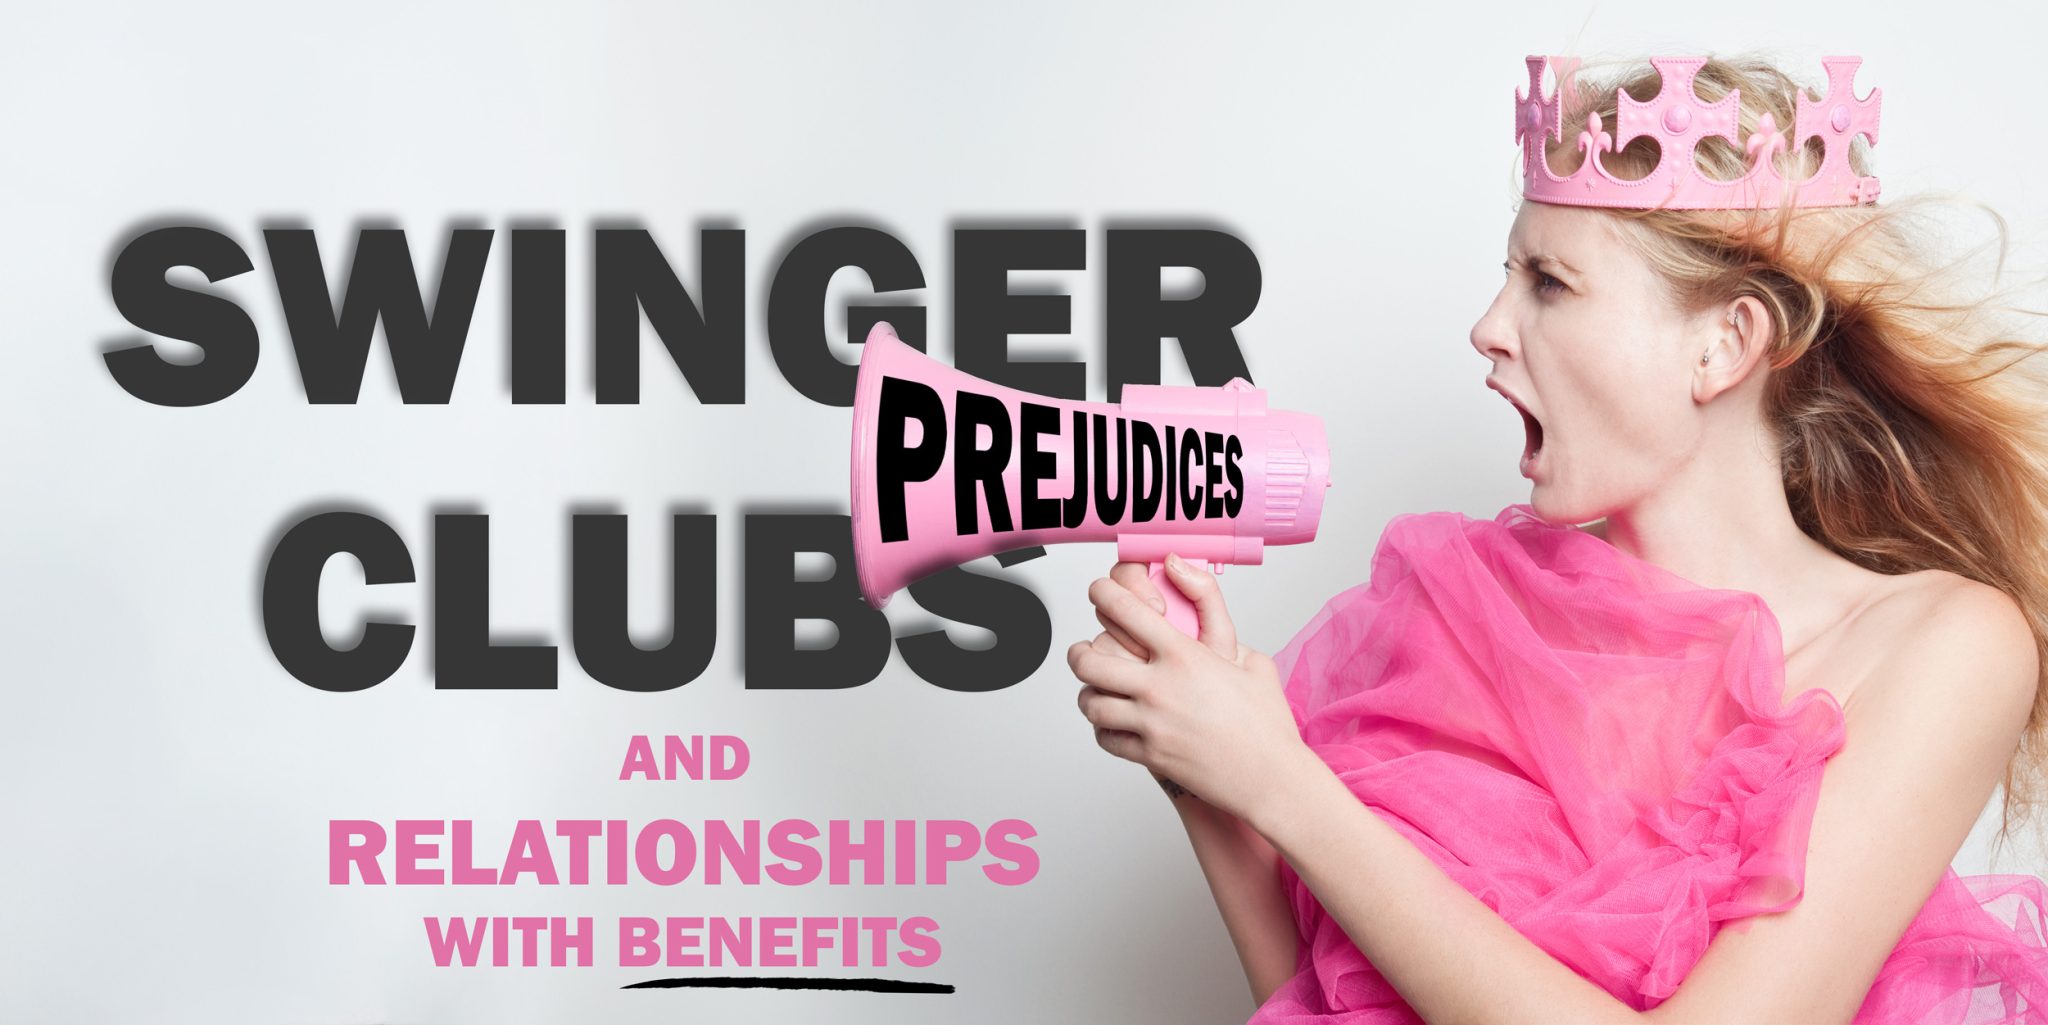 Prejuicios sobre clubes swingers y relaciones con beneficios